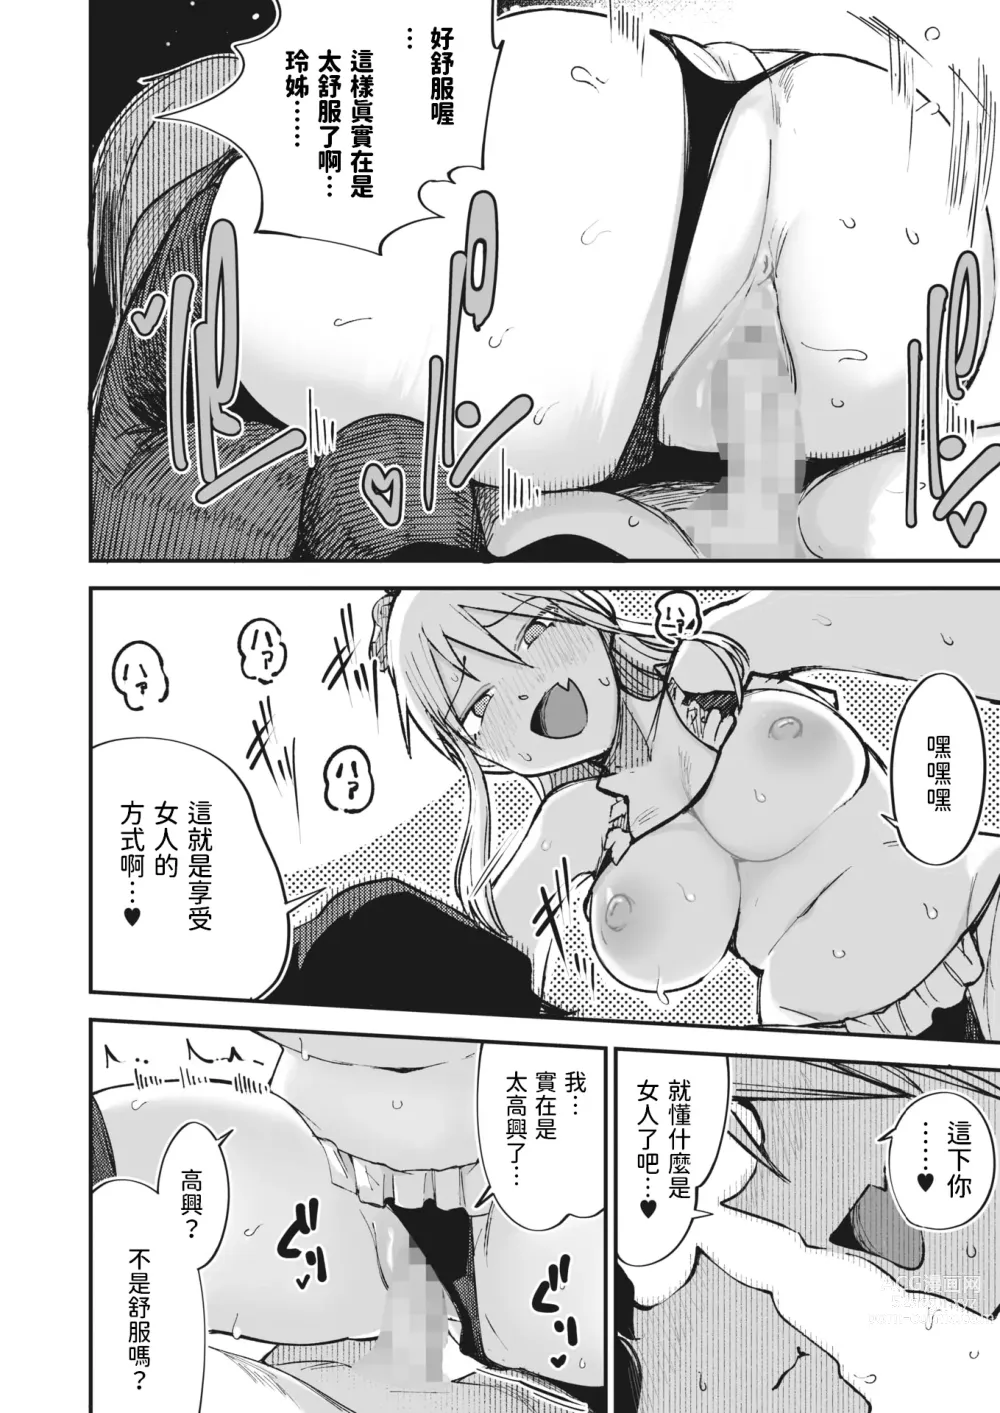 Page 18 of manga Furyou Shoujo,   Kousei shimasu... ka!?